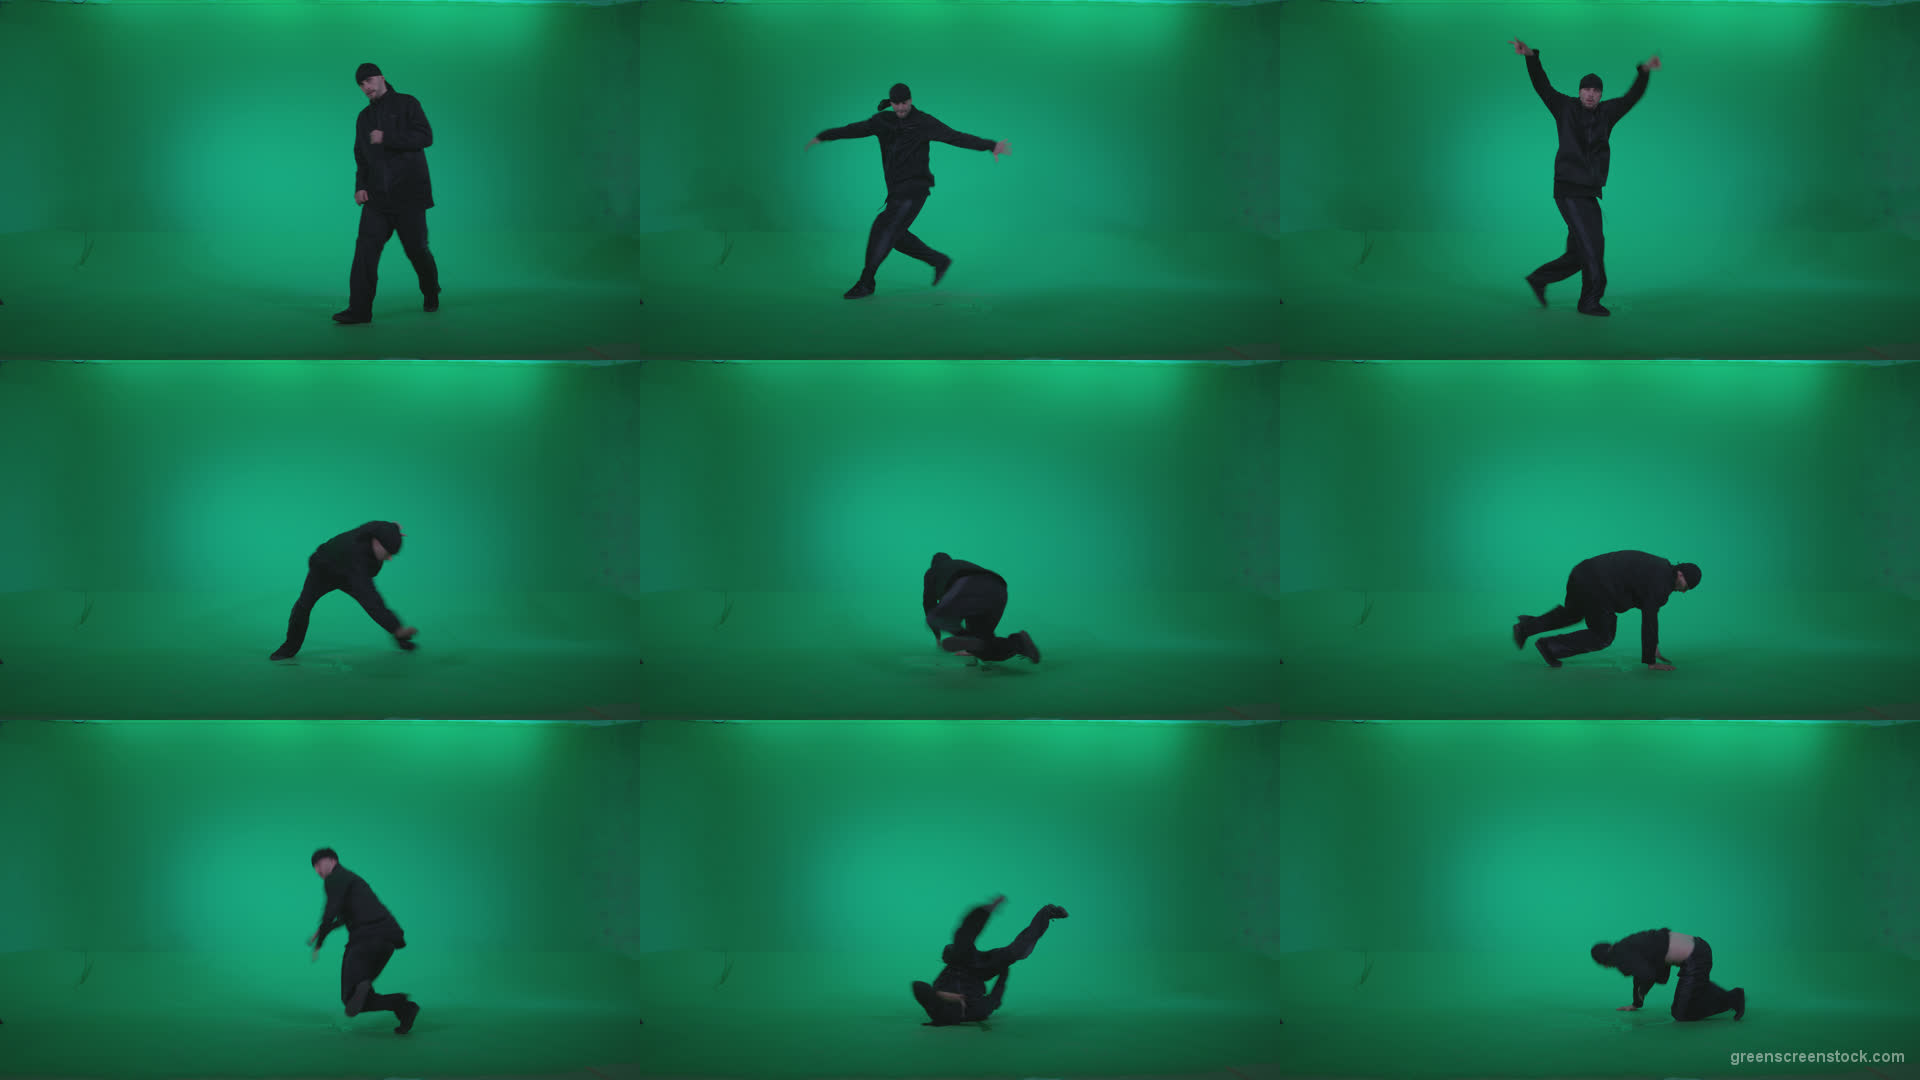 B-Boy-Break-Dance-b10 Green Screen Stock